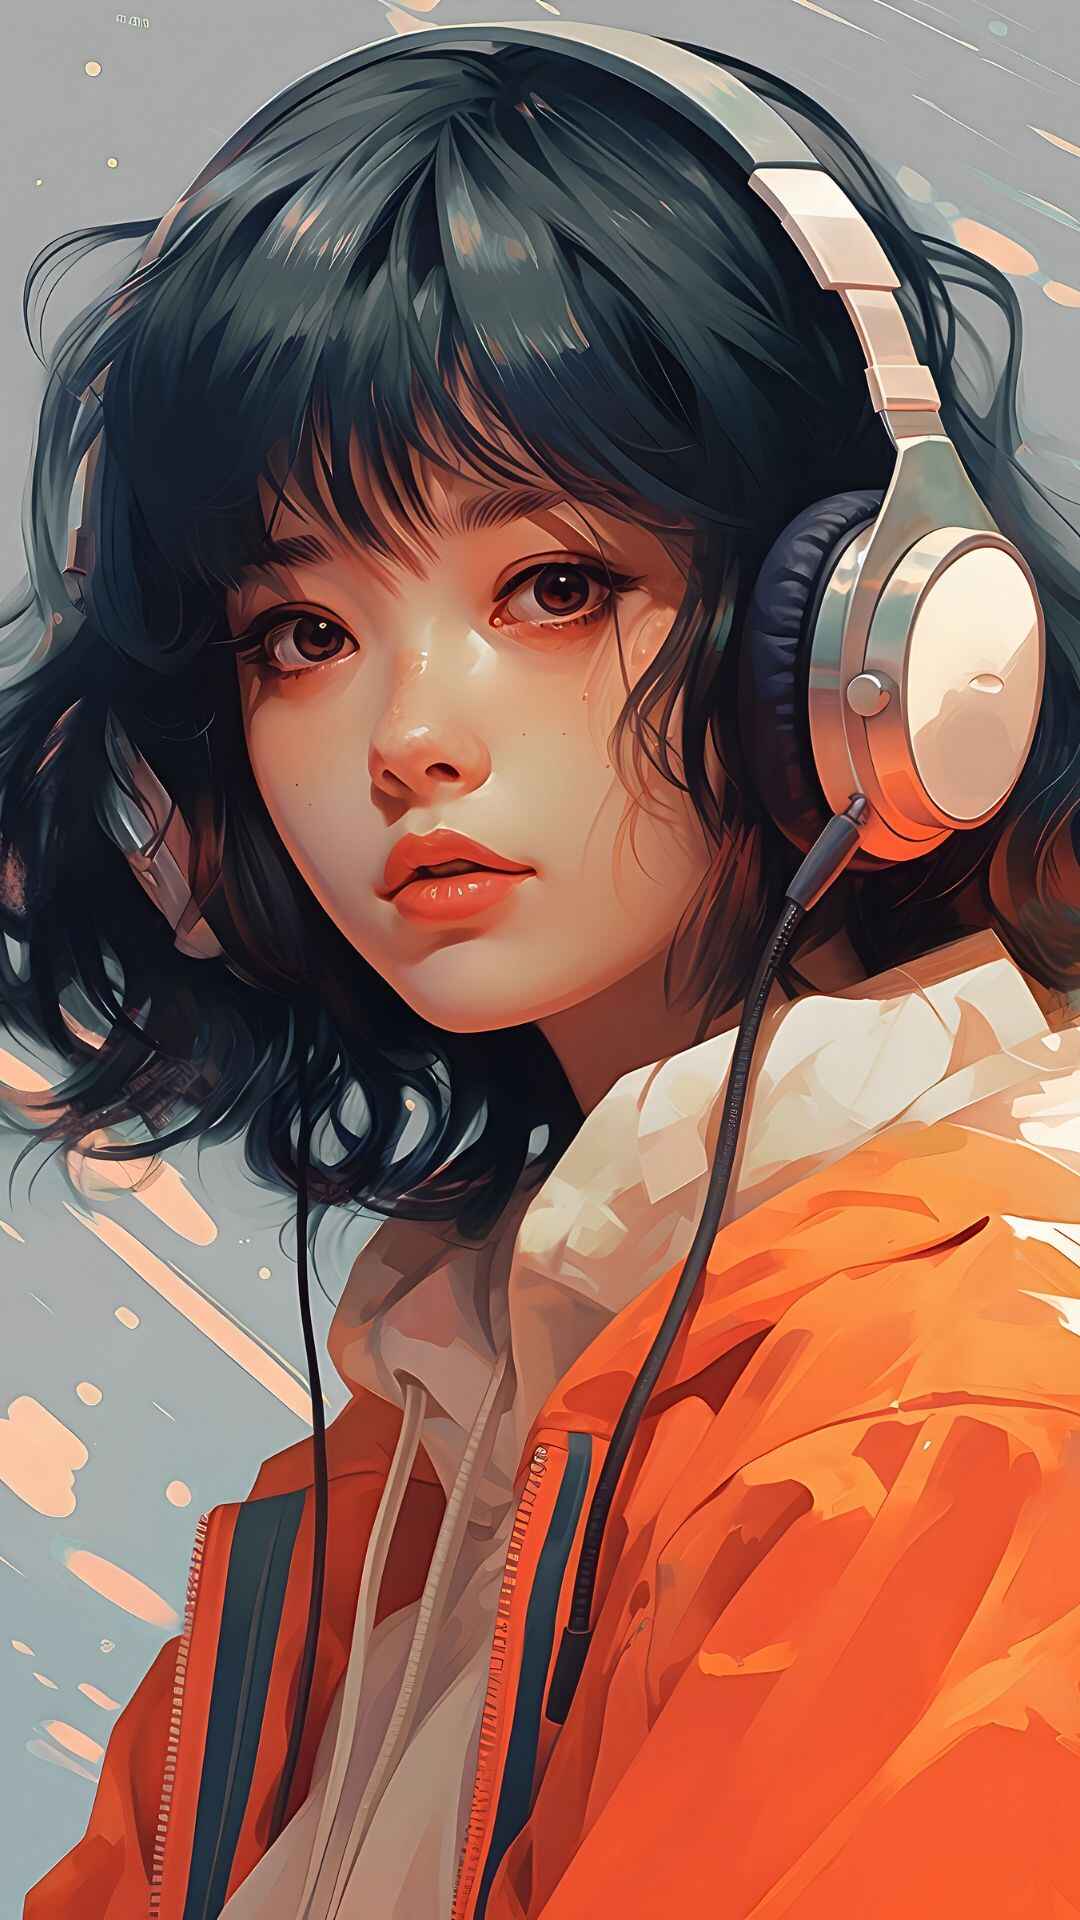 Anime Girl With Headphones Wallpaper 4K For Mobile